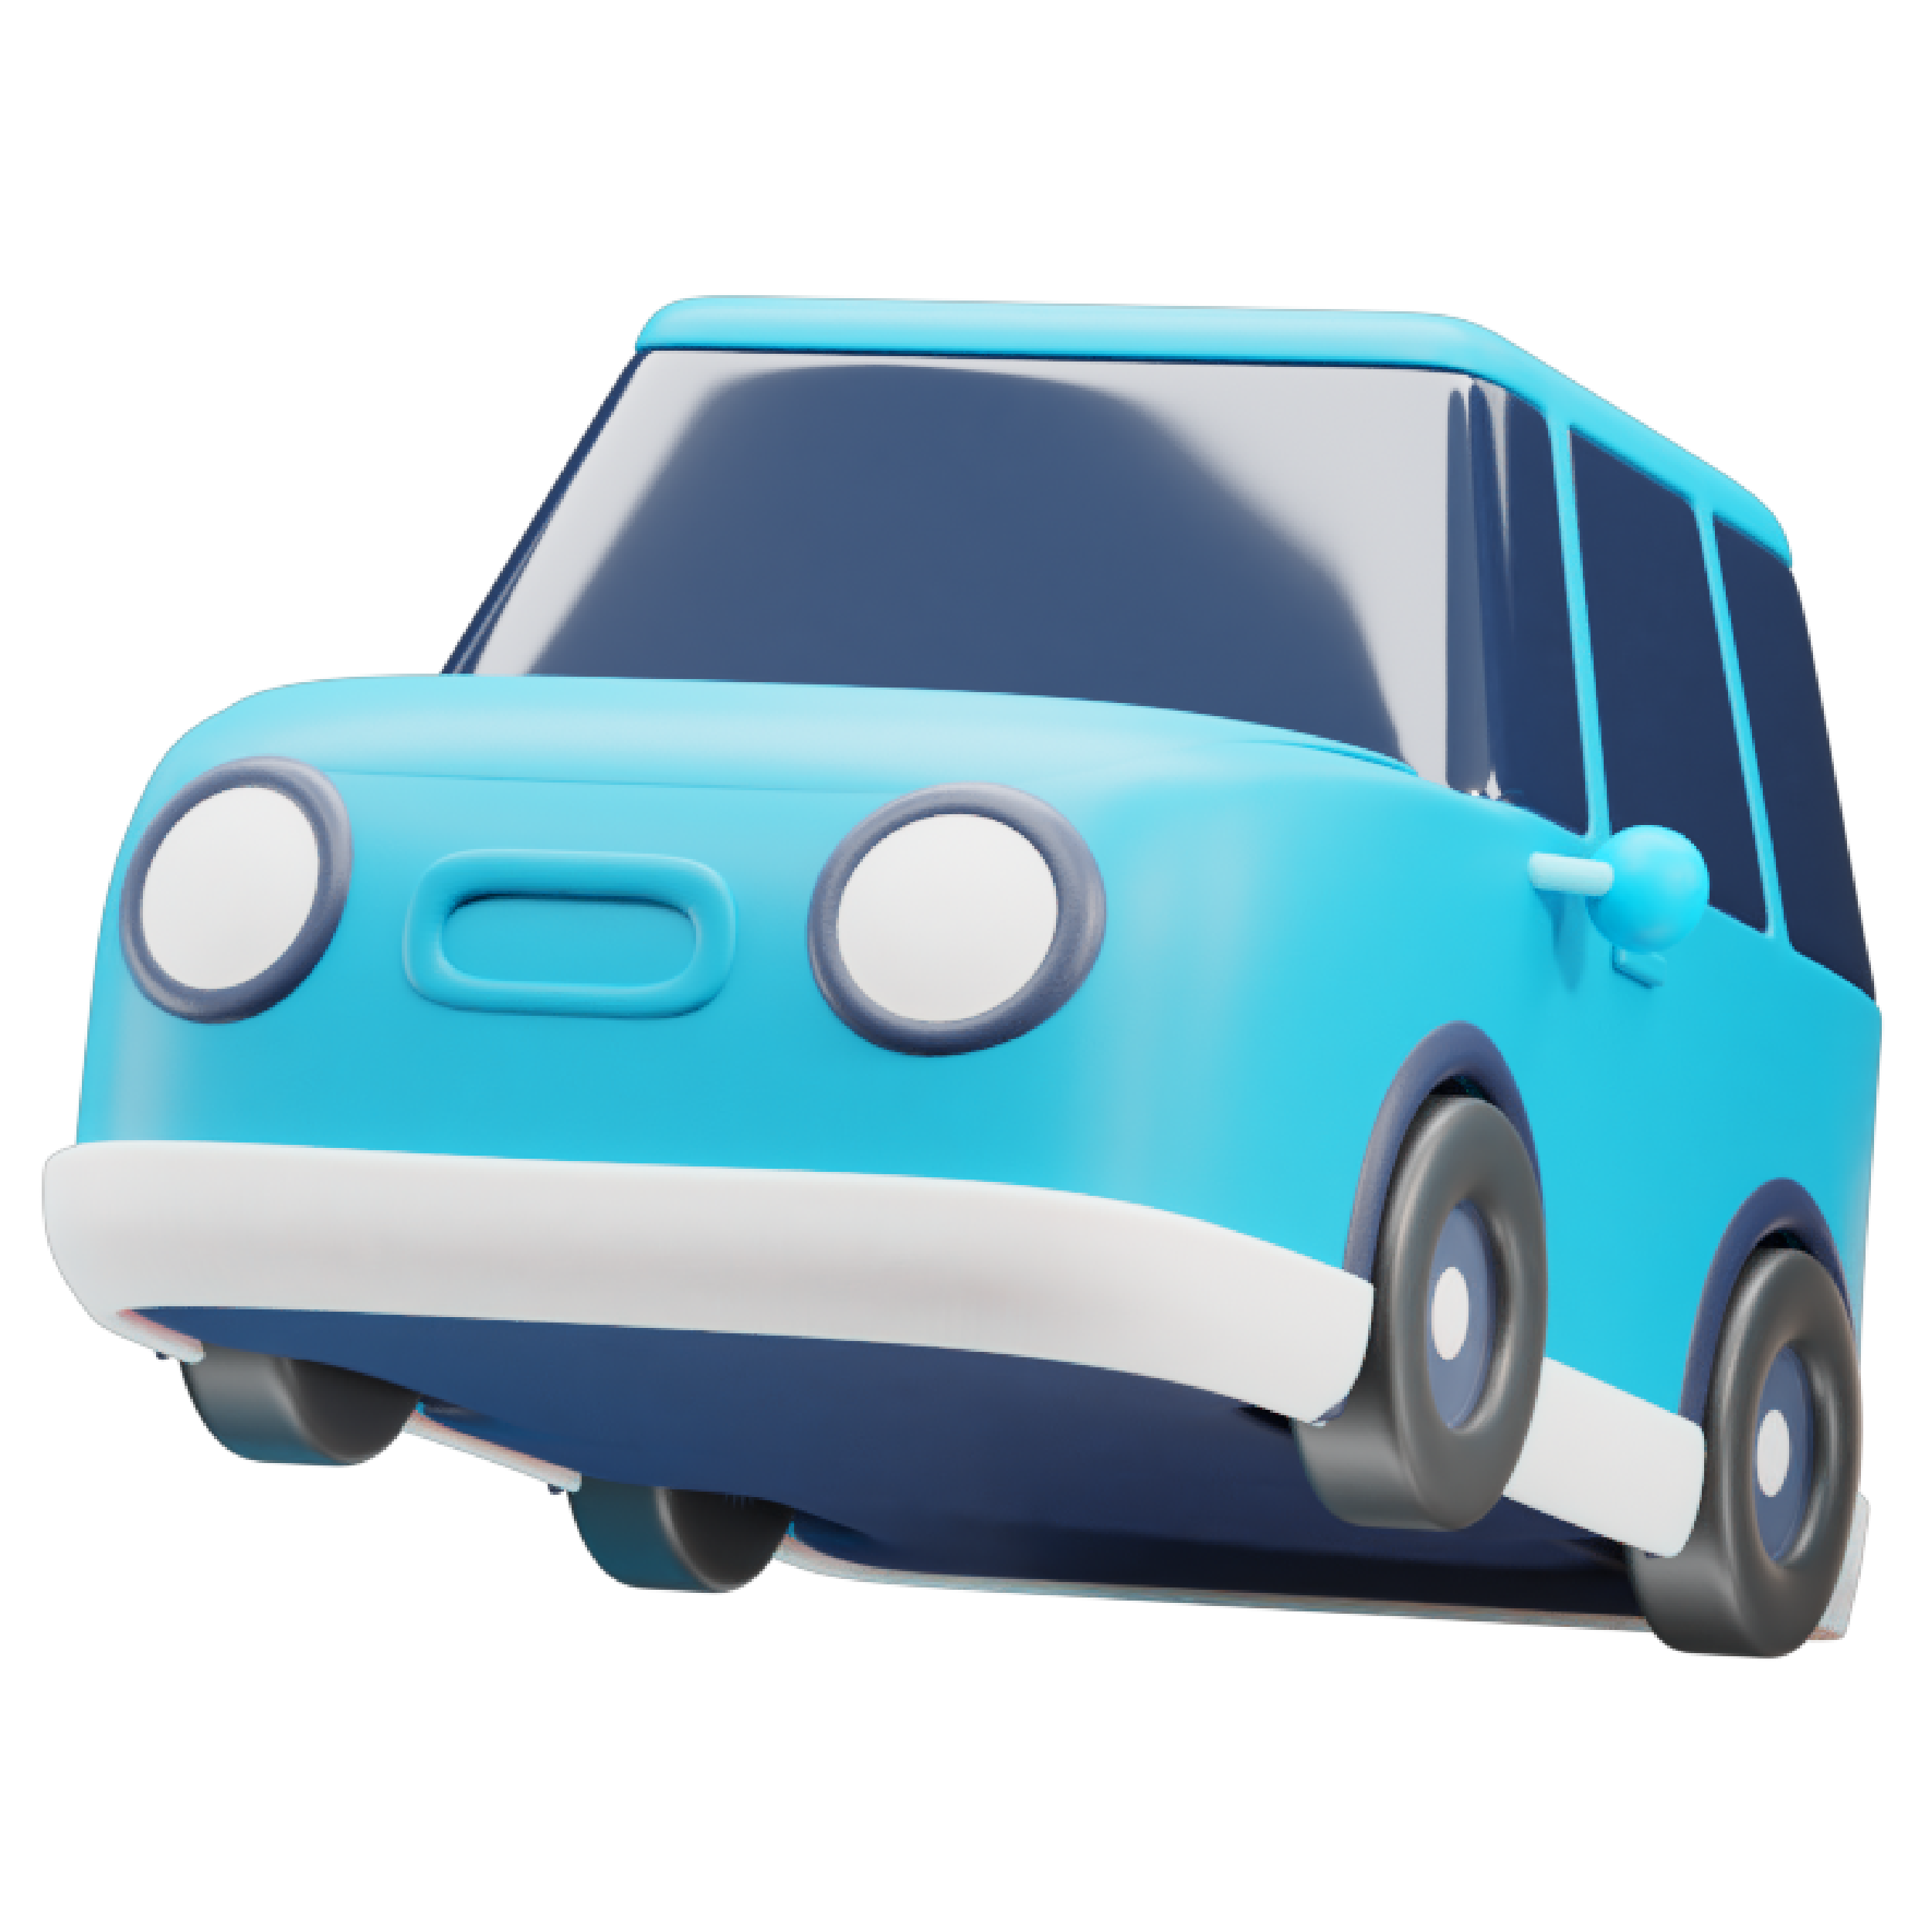 Ilustración de un coche azul